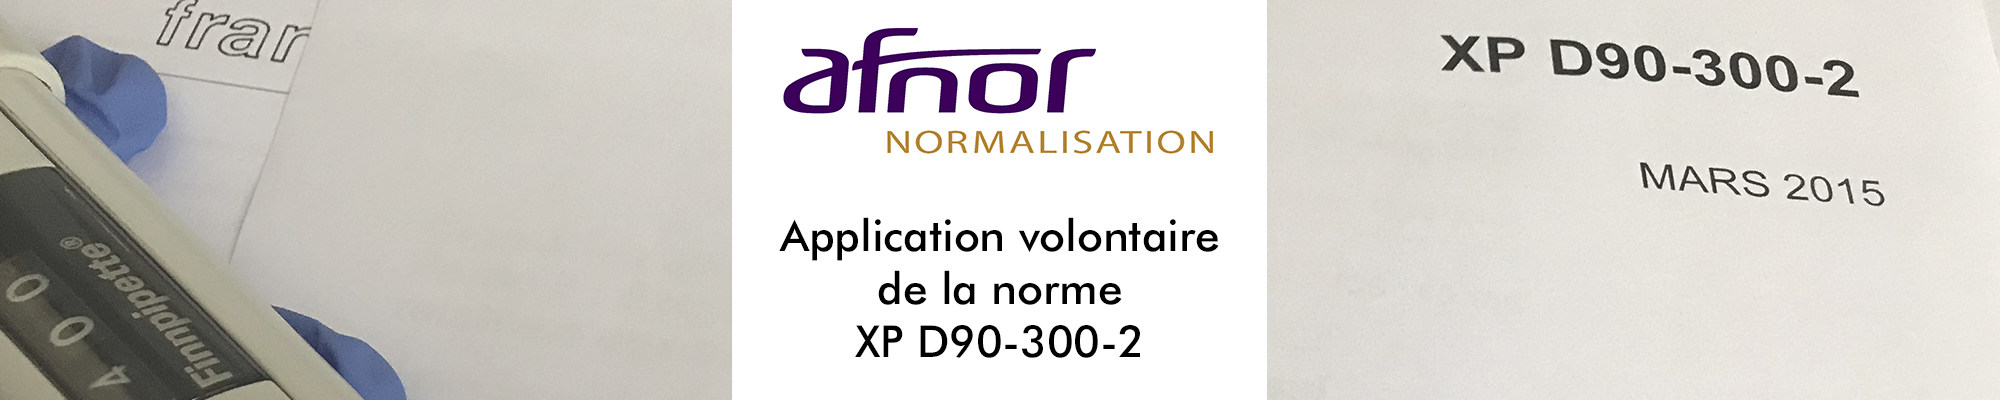 AFNOR Le Liquide Francais XP D90-300-2